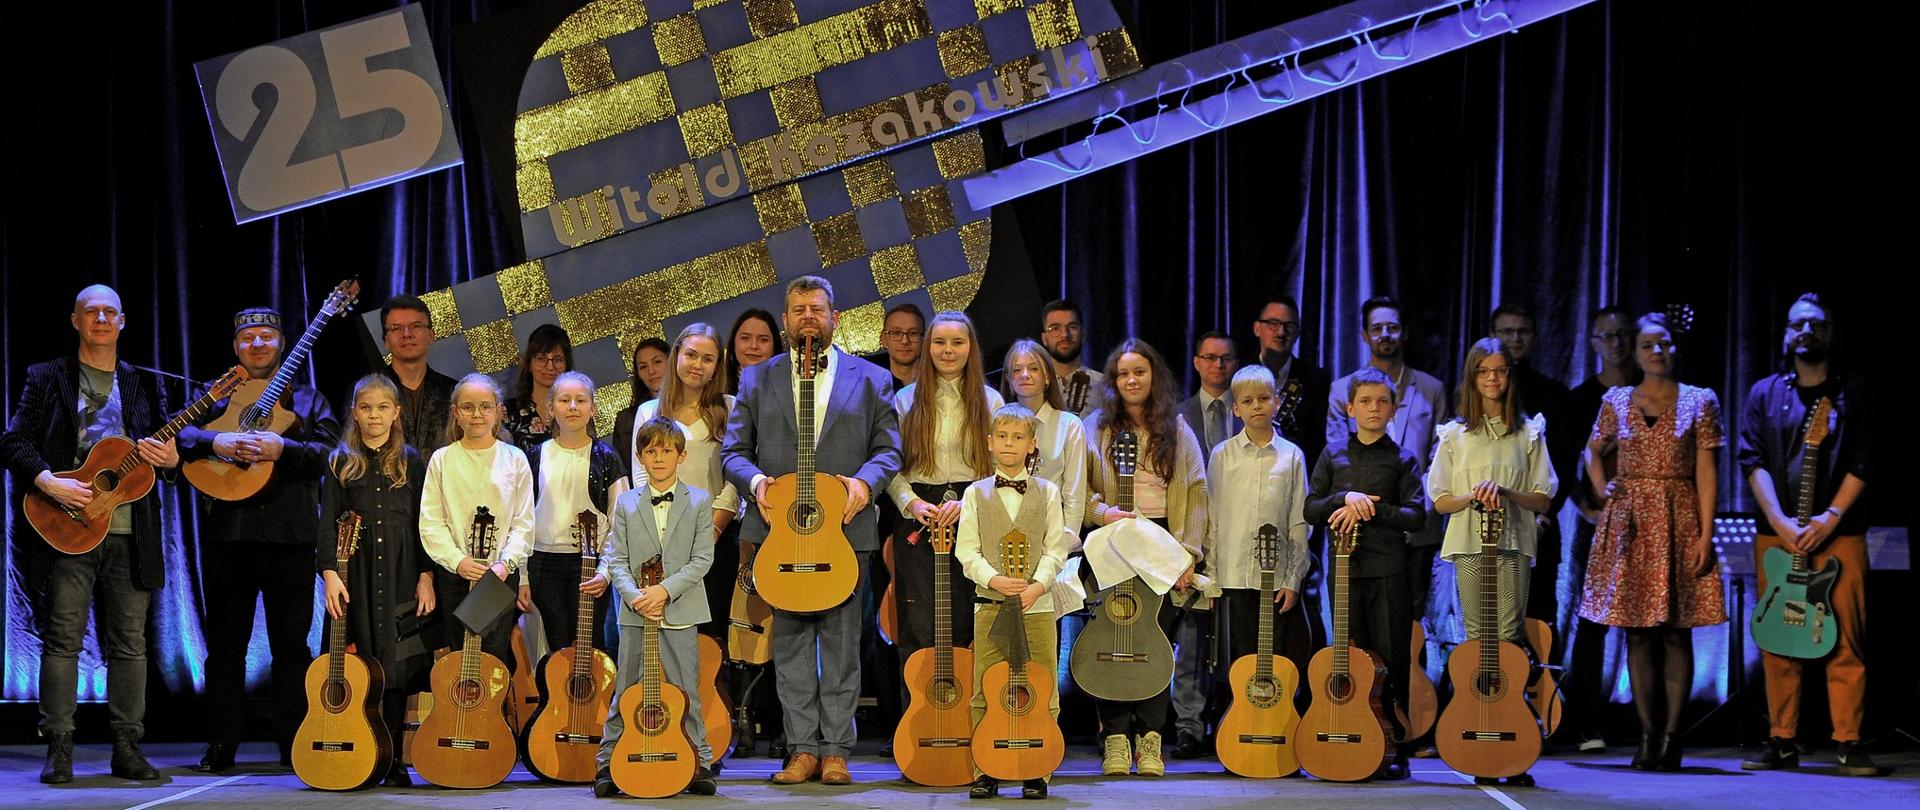 Zdjęcie grupowe wykonane na scenie w Kłodzkim Ośrodku Kultury, wszystkie osoby na zdjęciu trzymają gitarę, a w tle widoczna jest grafika gitary z napisem 25 Witold Kozakowski